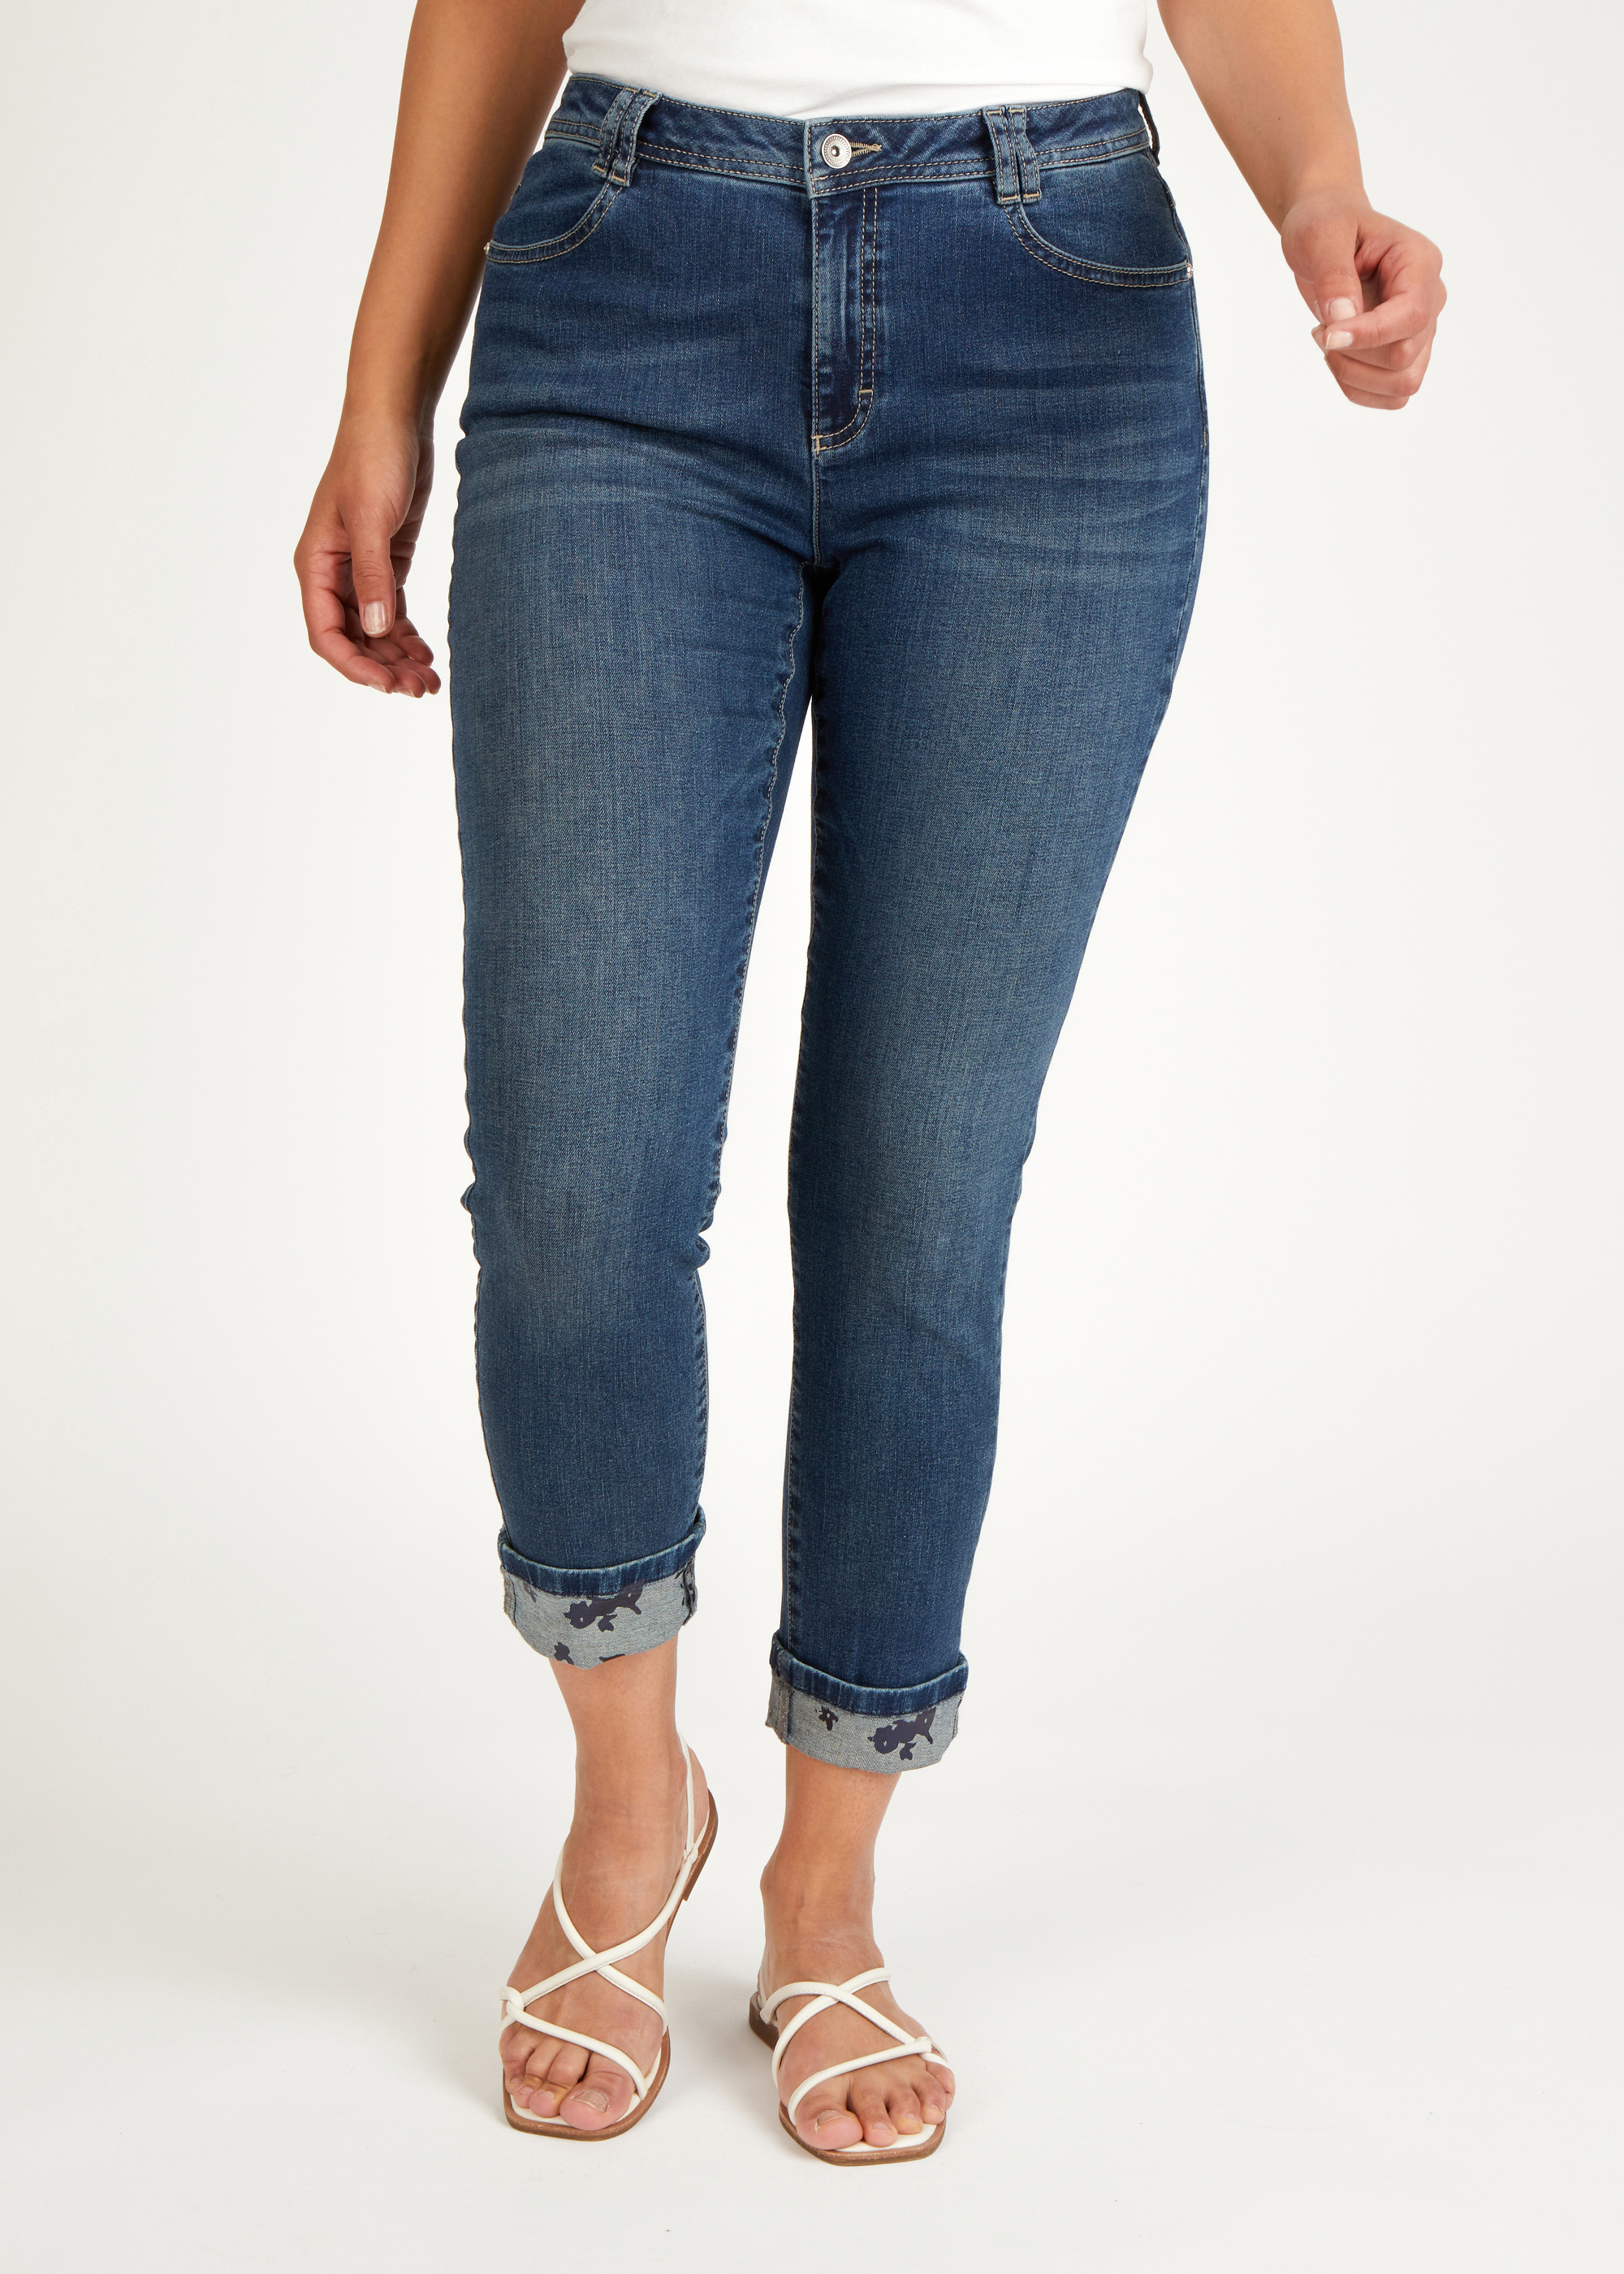 Jeans in Cotton-Qualität mit floralem Print